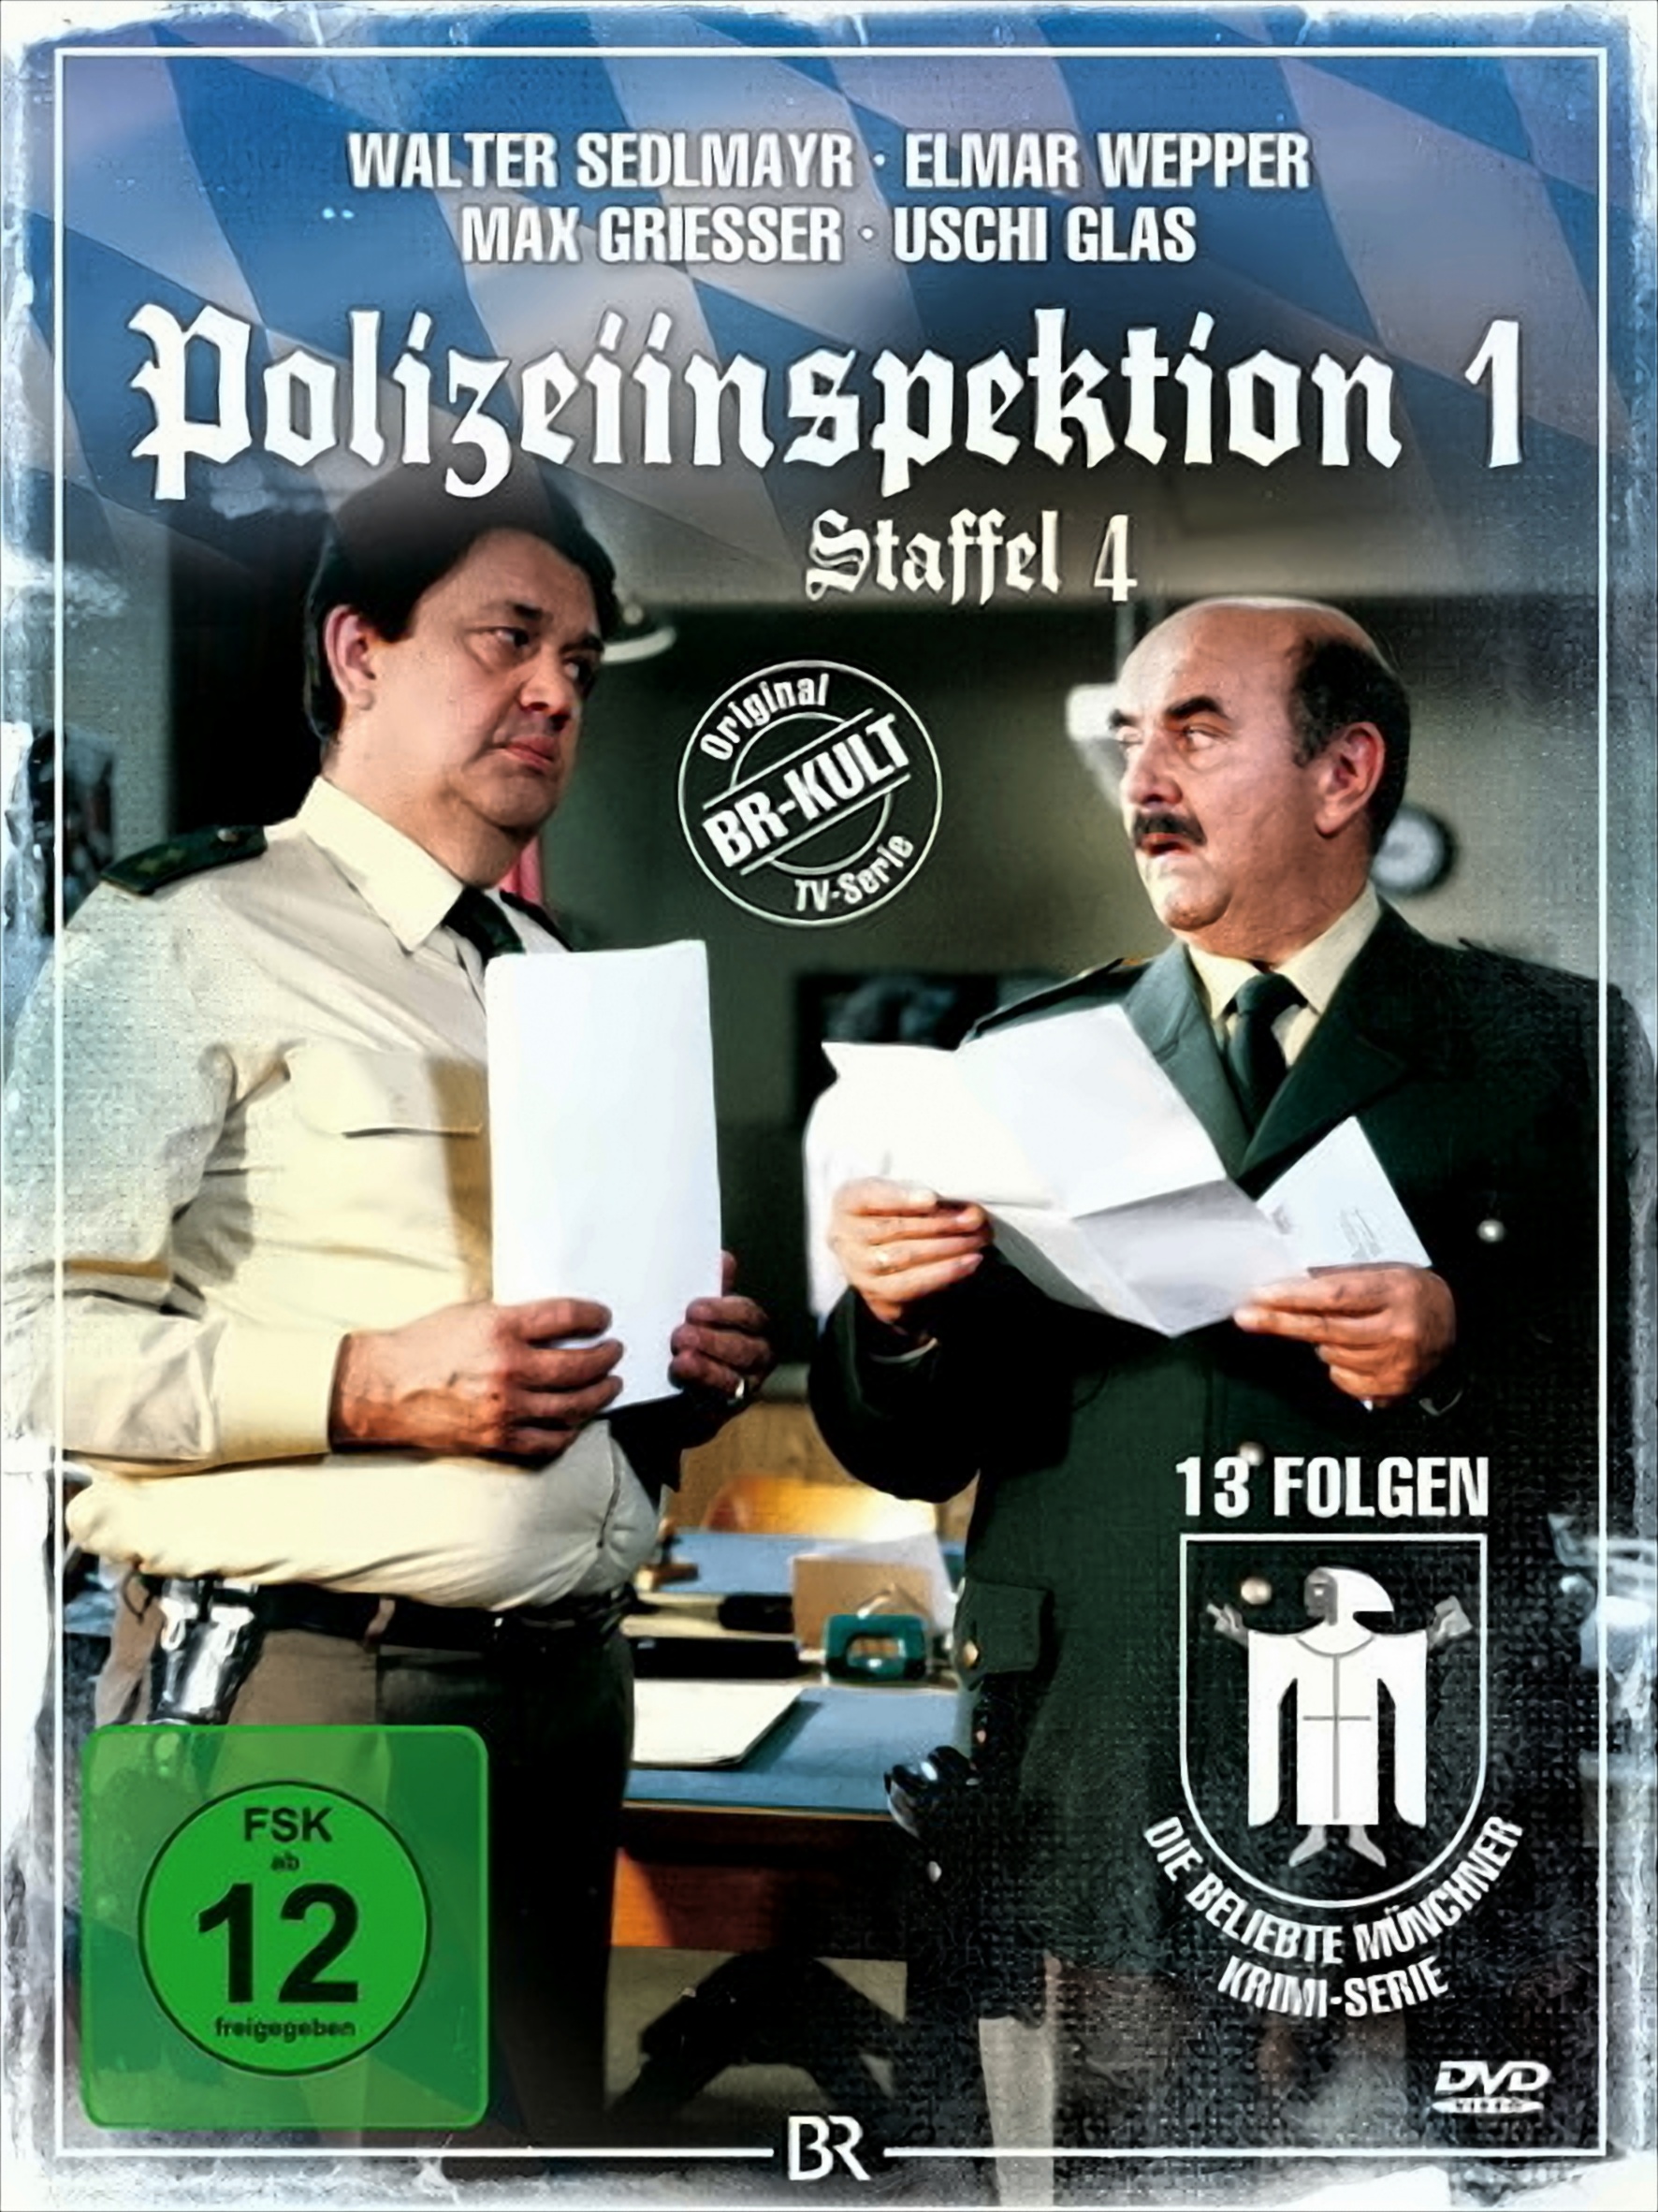 Polizeiinspektion 1 - Staffel 04 von Koch Media GmbH